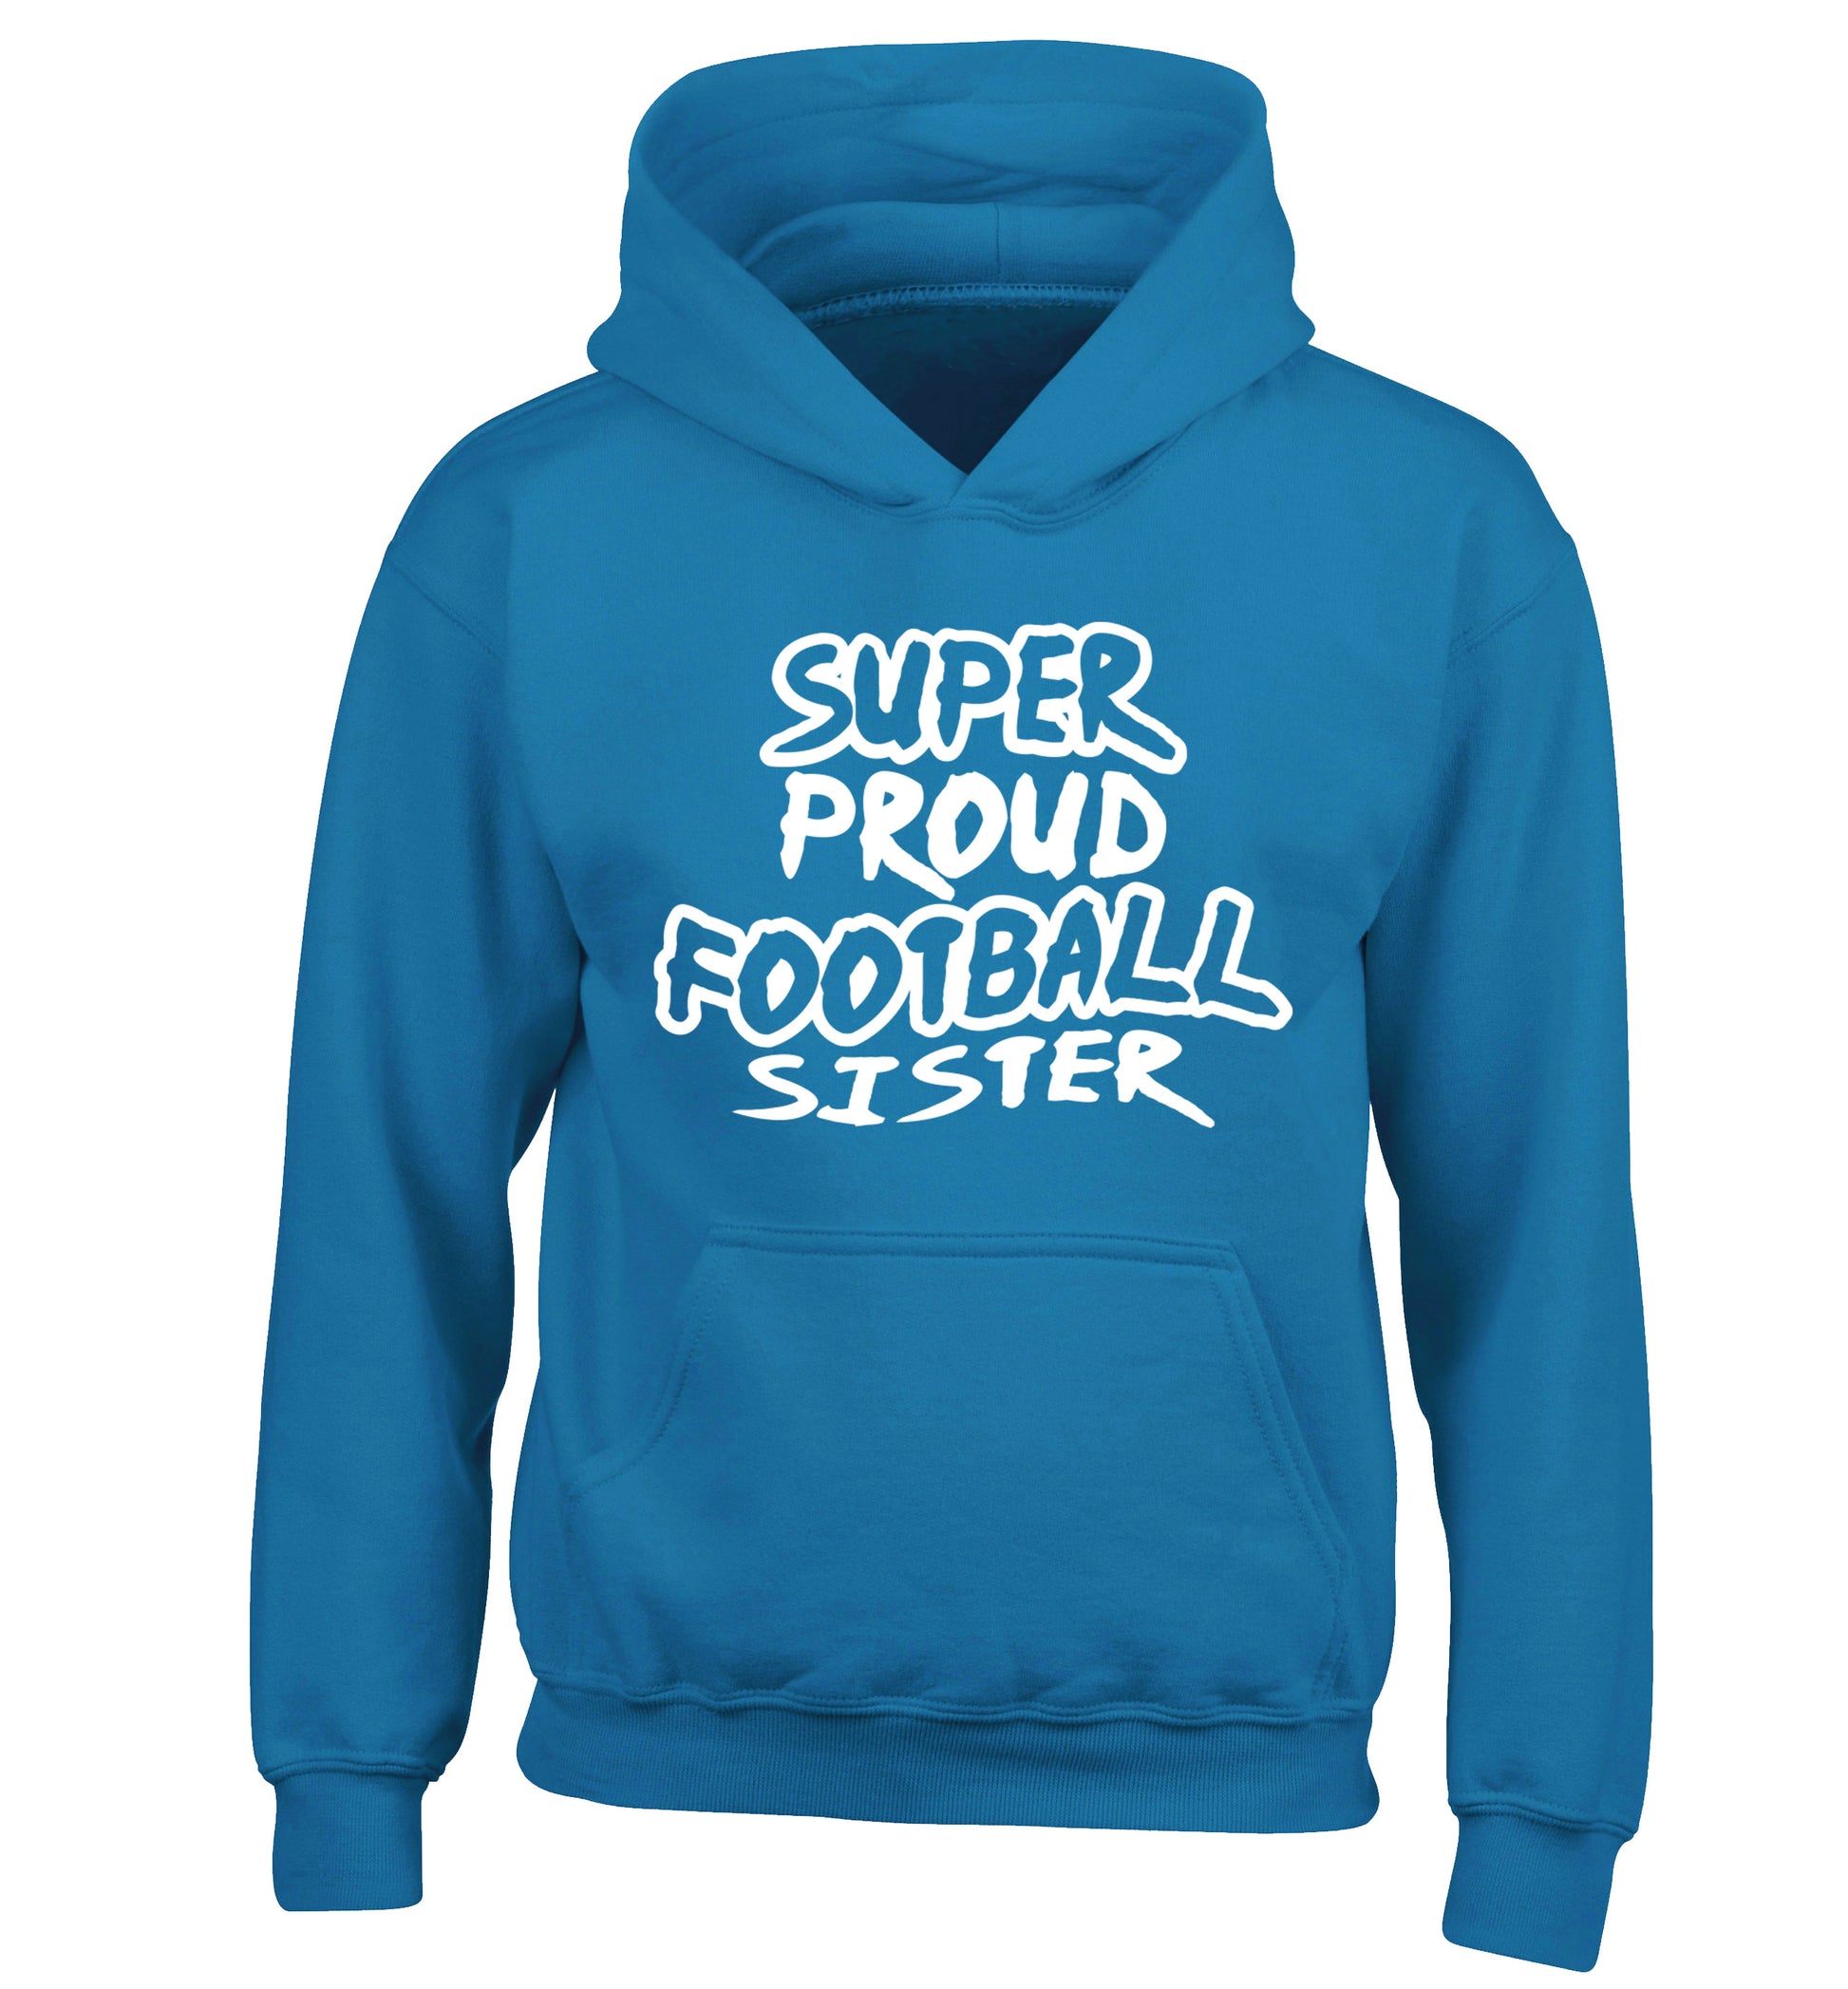 Super proud football sister children's blue hoodie 12-14 Years